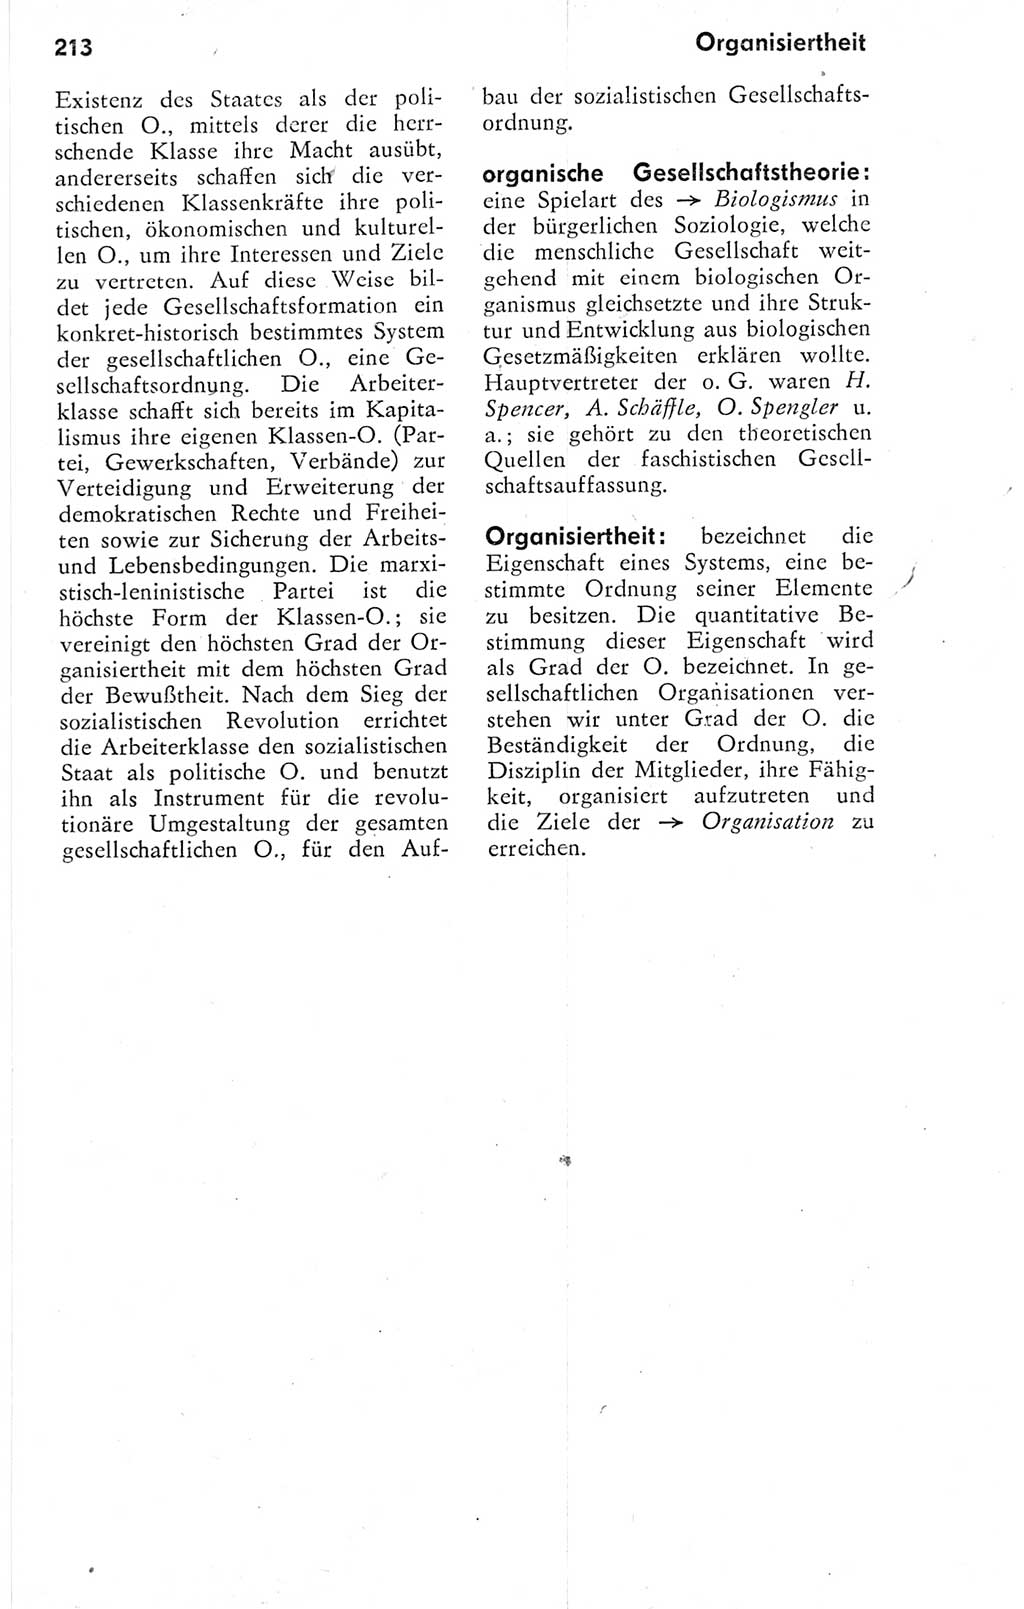 Kleines Wörterbuch der marxistisch-leninistischen Philosophie [Deutsche Demokratische Republik (DDR)] 1974, Seite 213 (Kl. Wb. ML Phil. DDR 1974, S. 213)